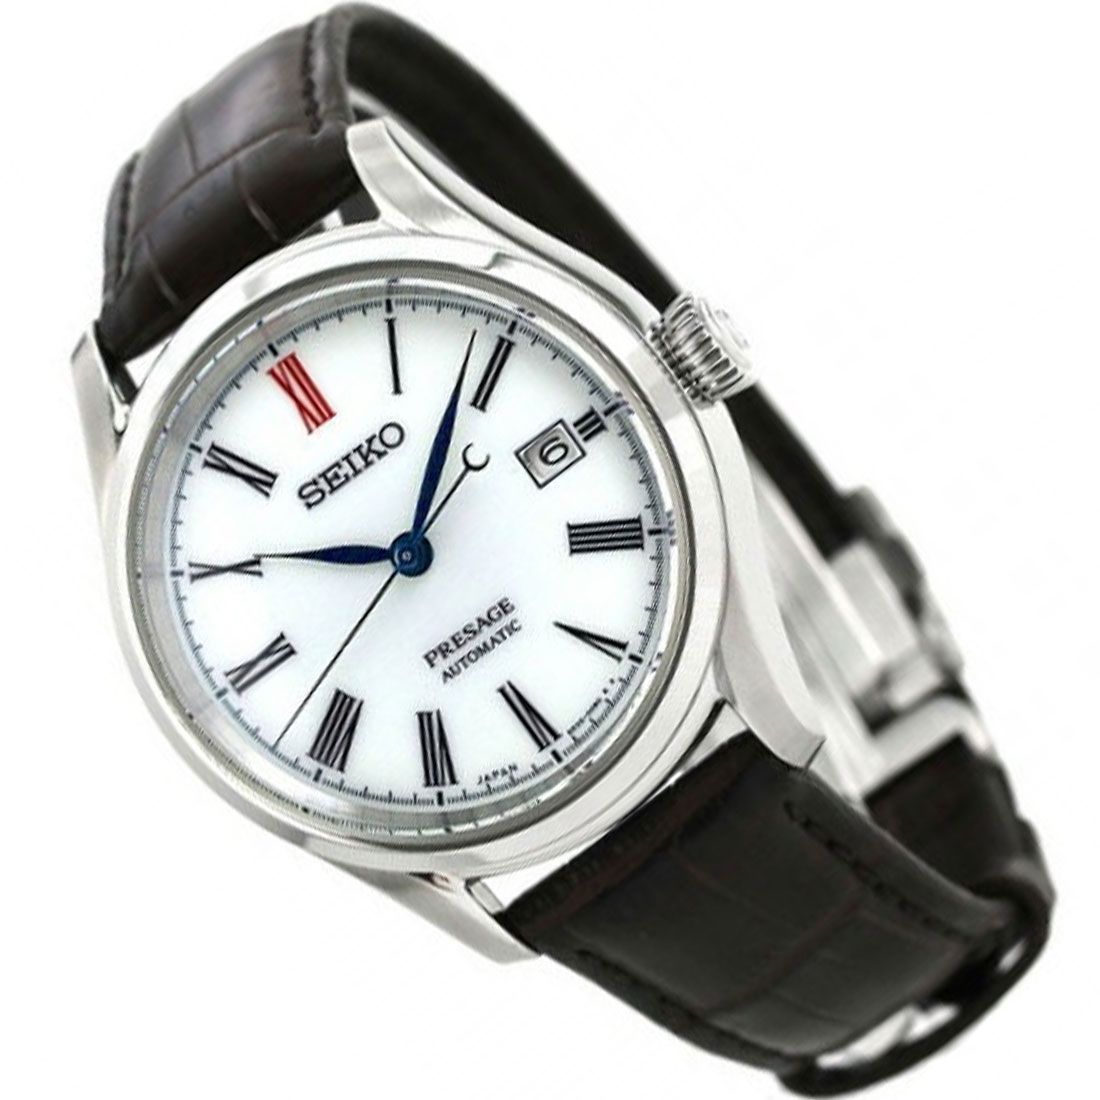 Seiko Presage Automatic Arita Porcelain JDM Watch SARX061 -Seiko